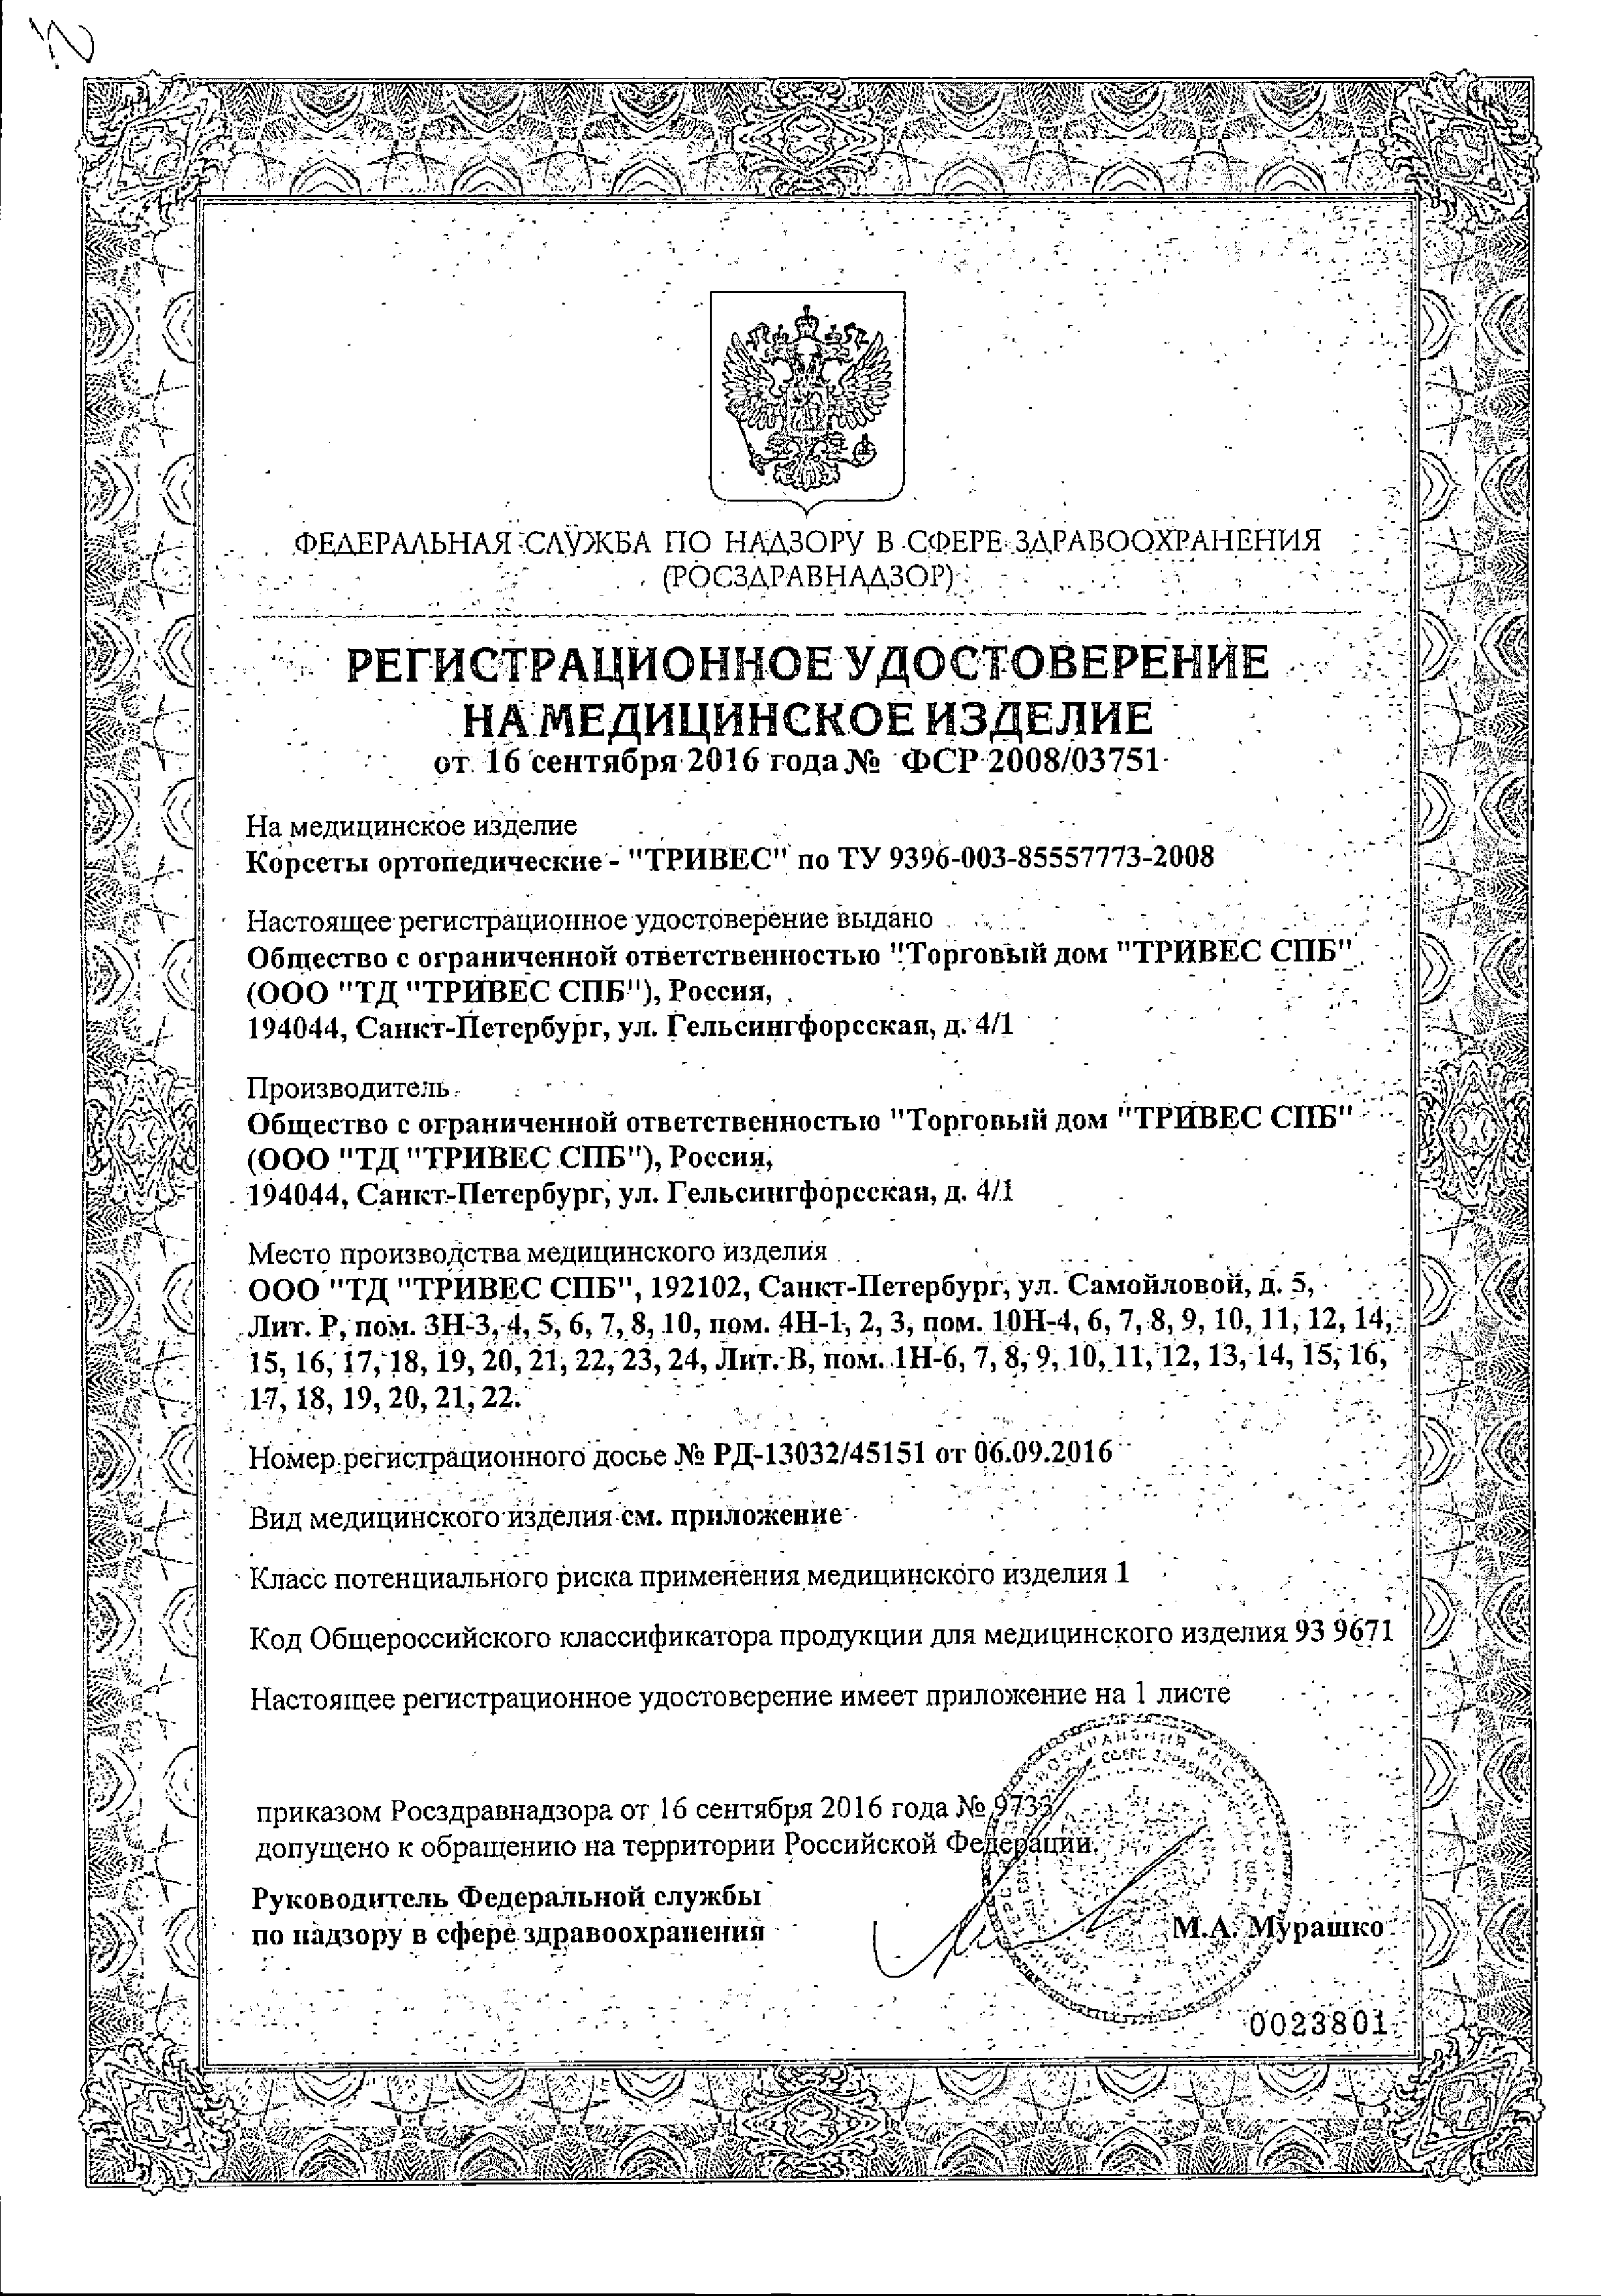 Корсет ортопедический сертификат